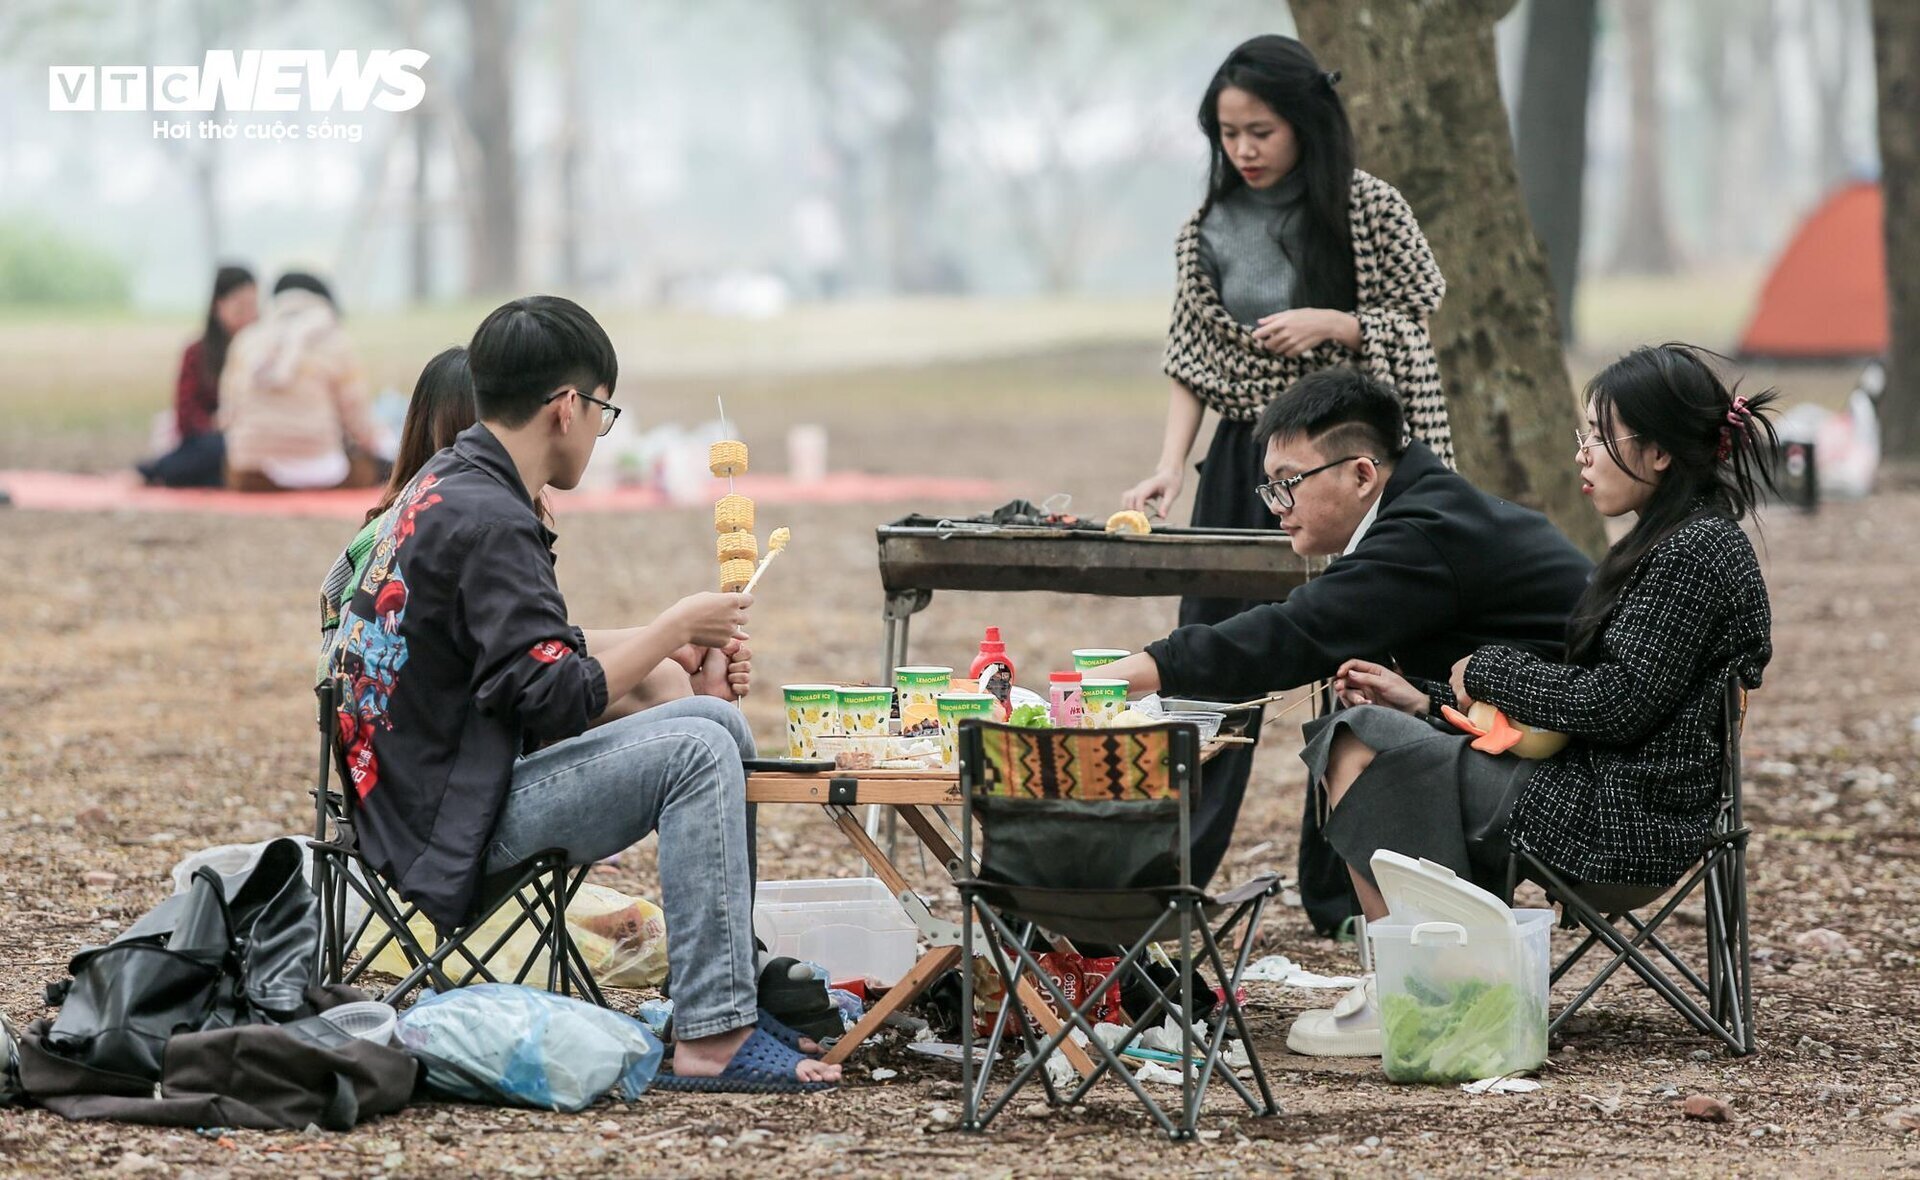 Công viên Yên Sở - điểm du lịch 30/4 1/5 gần Hà Nội cho gia đình.